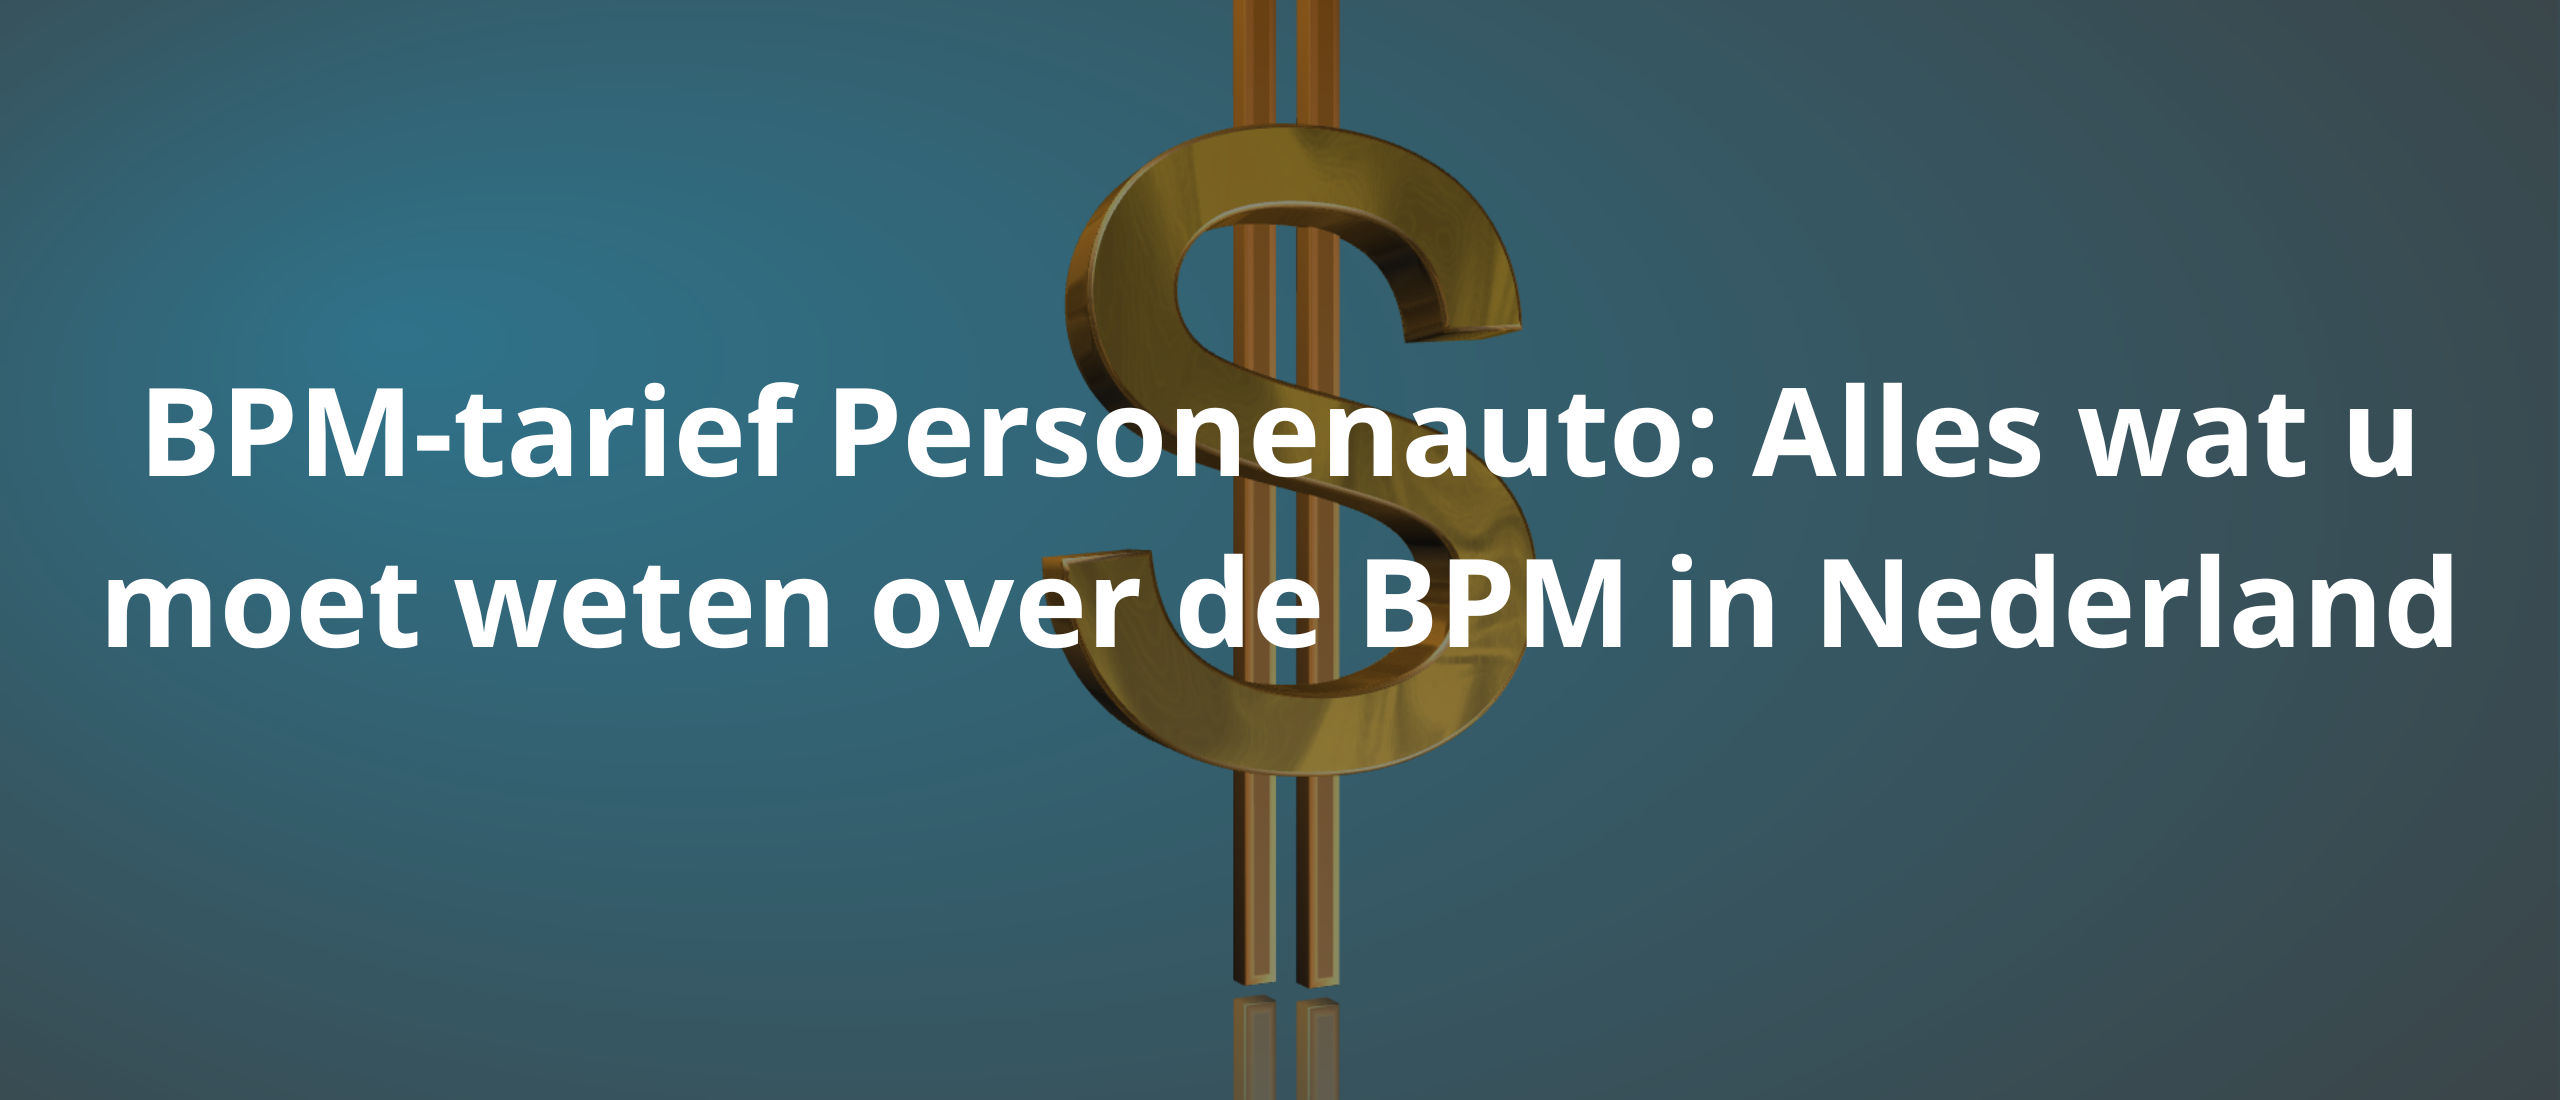 BPM-tarief Personenauto: Alles wat u moet weten over de BPM in Nederland